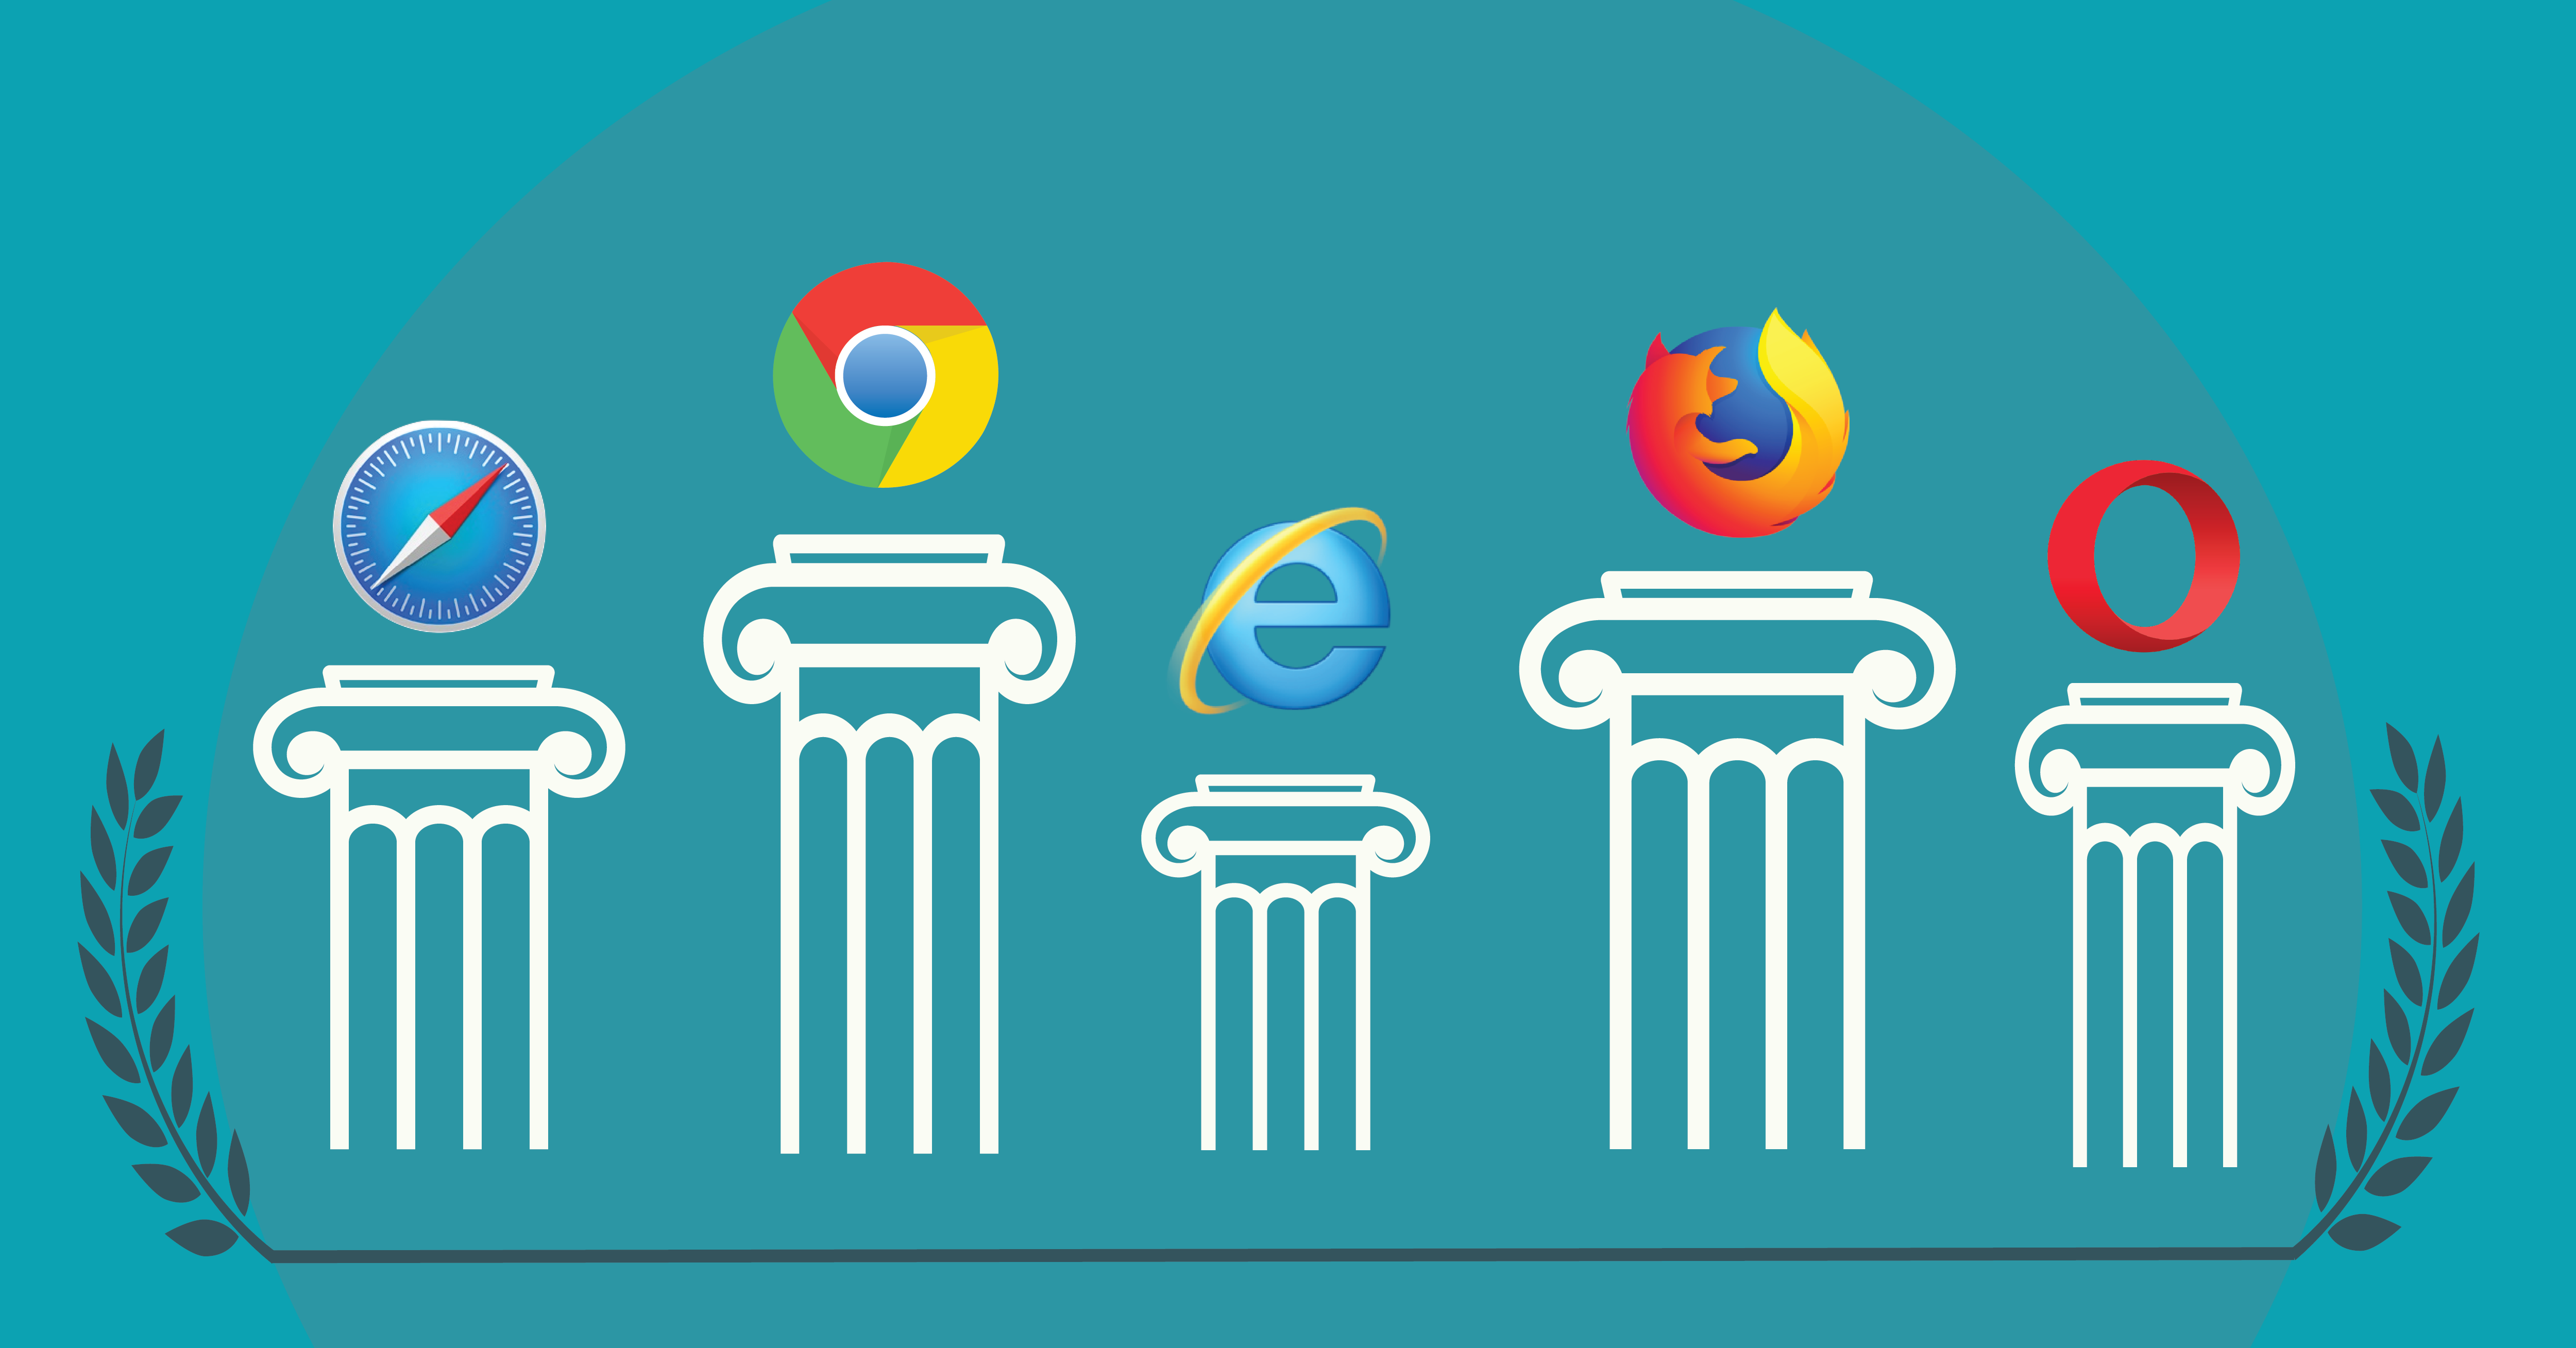 Differenza dei browser e compatibilità dei siti